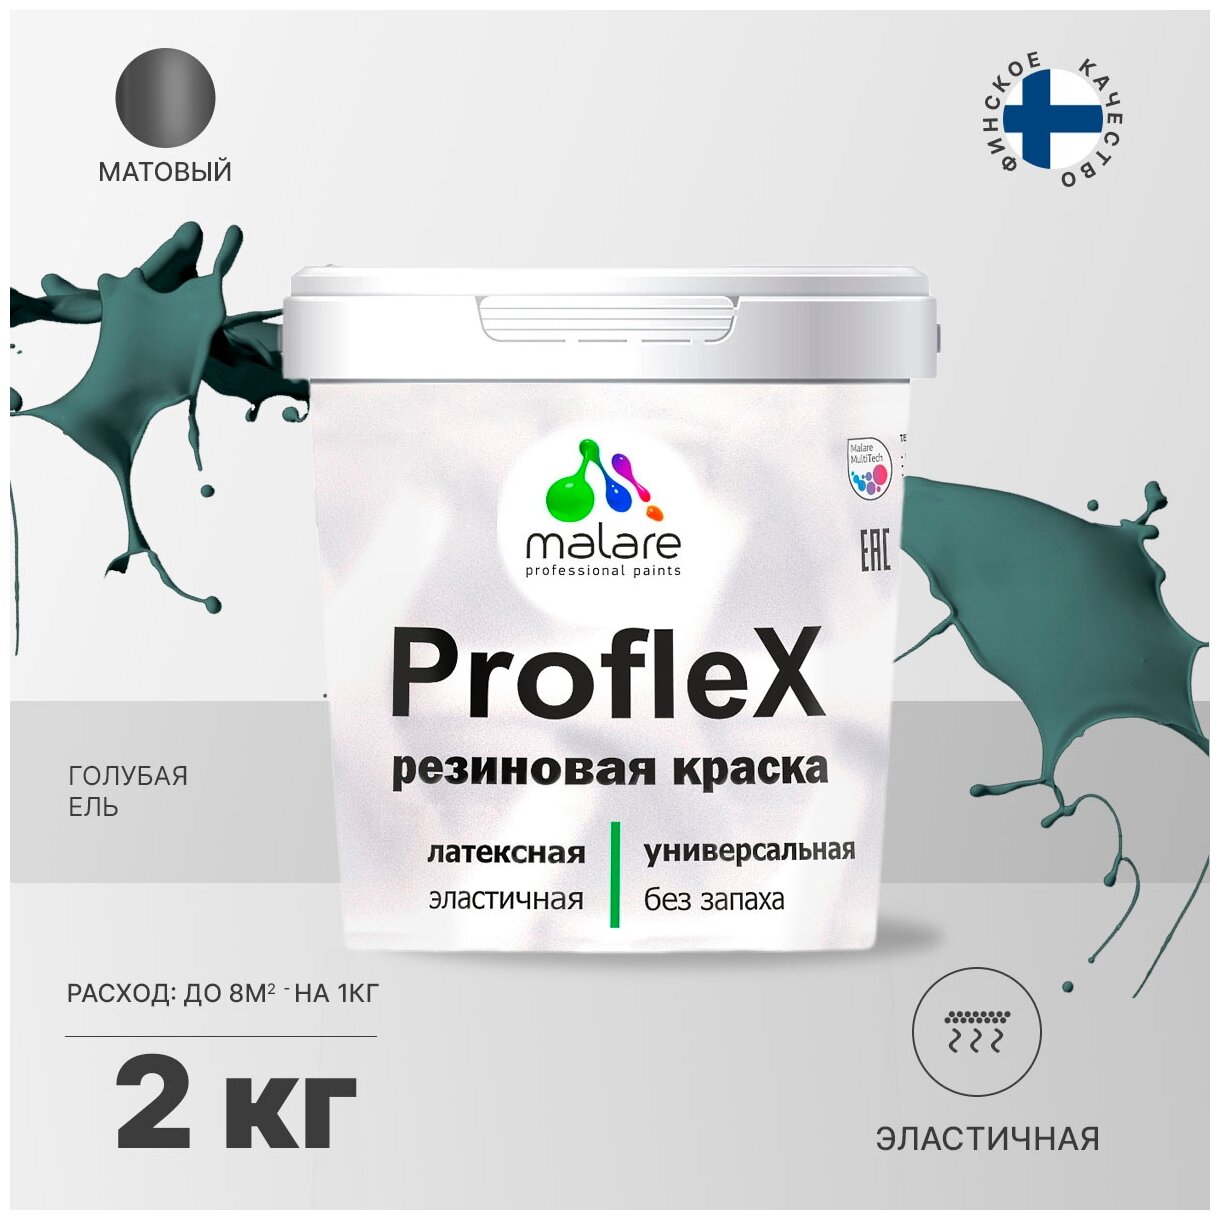   Malare ProfleX  , , , , , ,  , ,  , ,  , 2 .